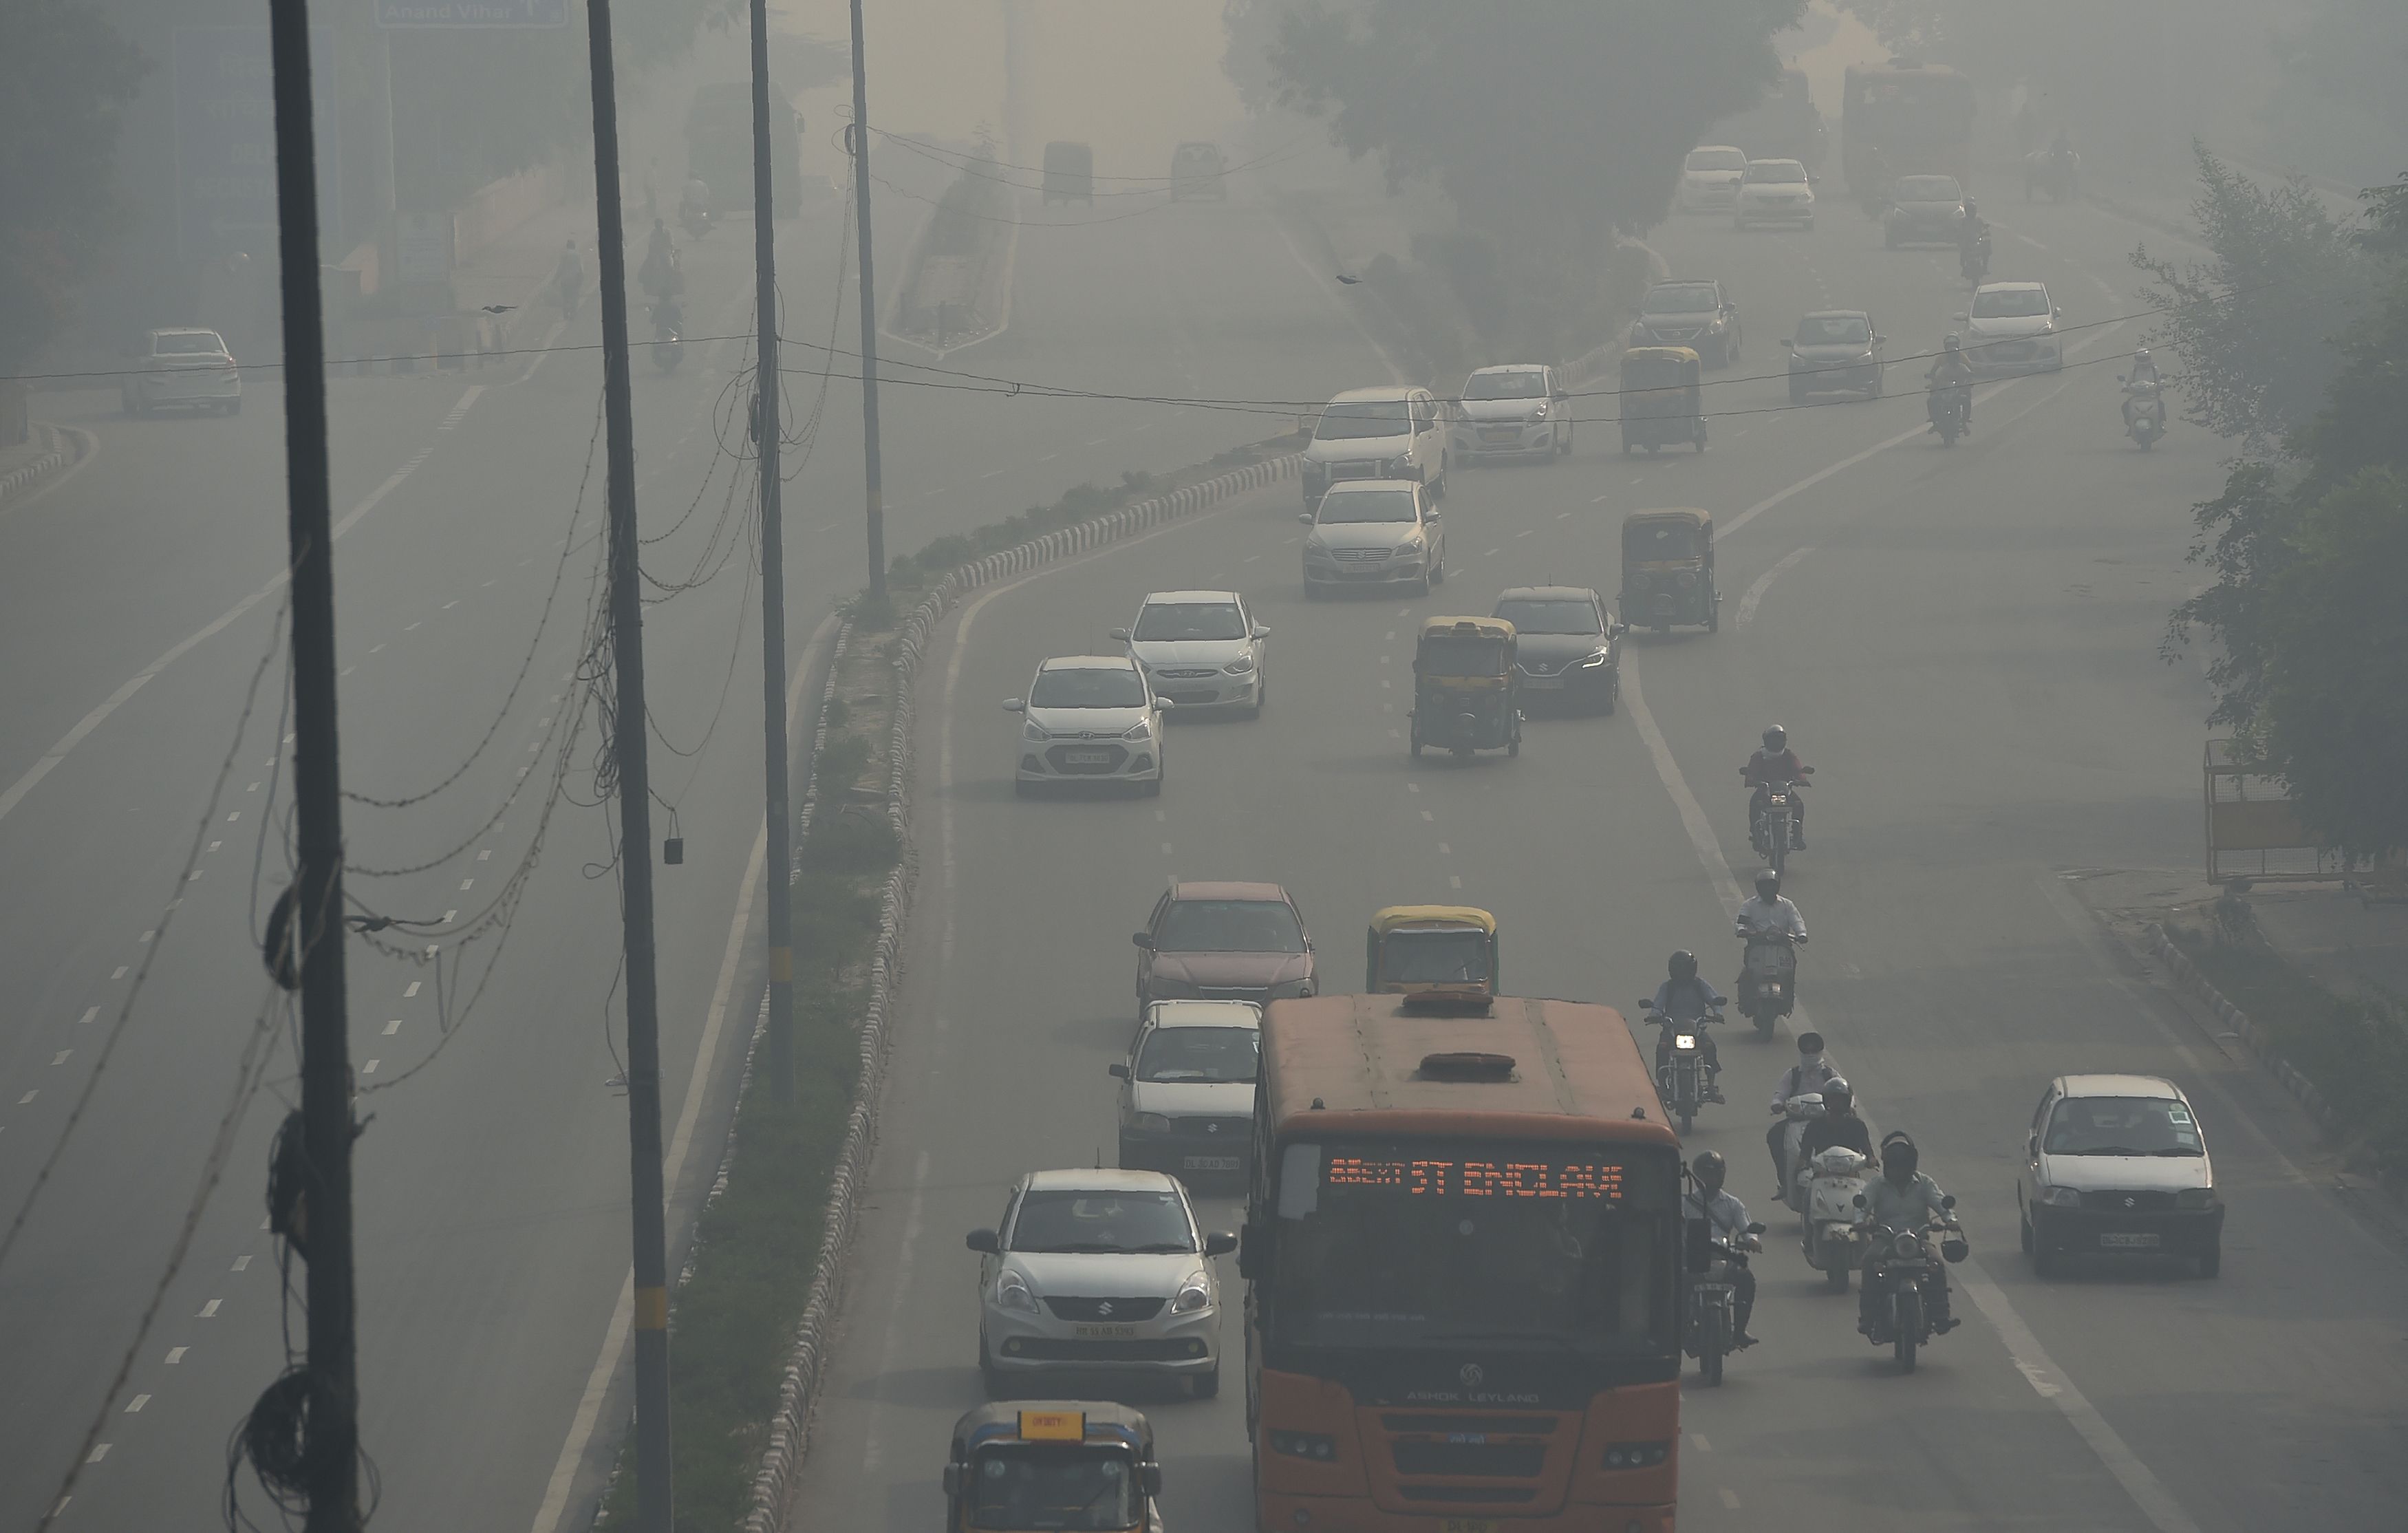 الضباب الدخانى يحجب الرؤية فى الهند